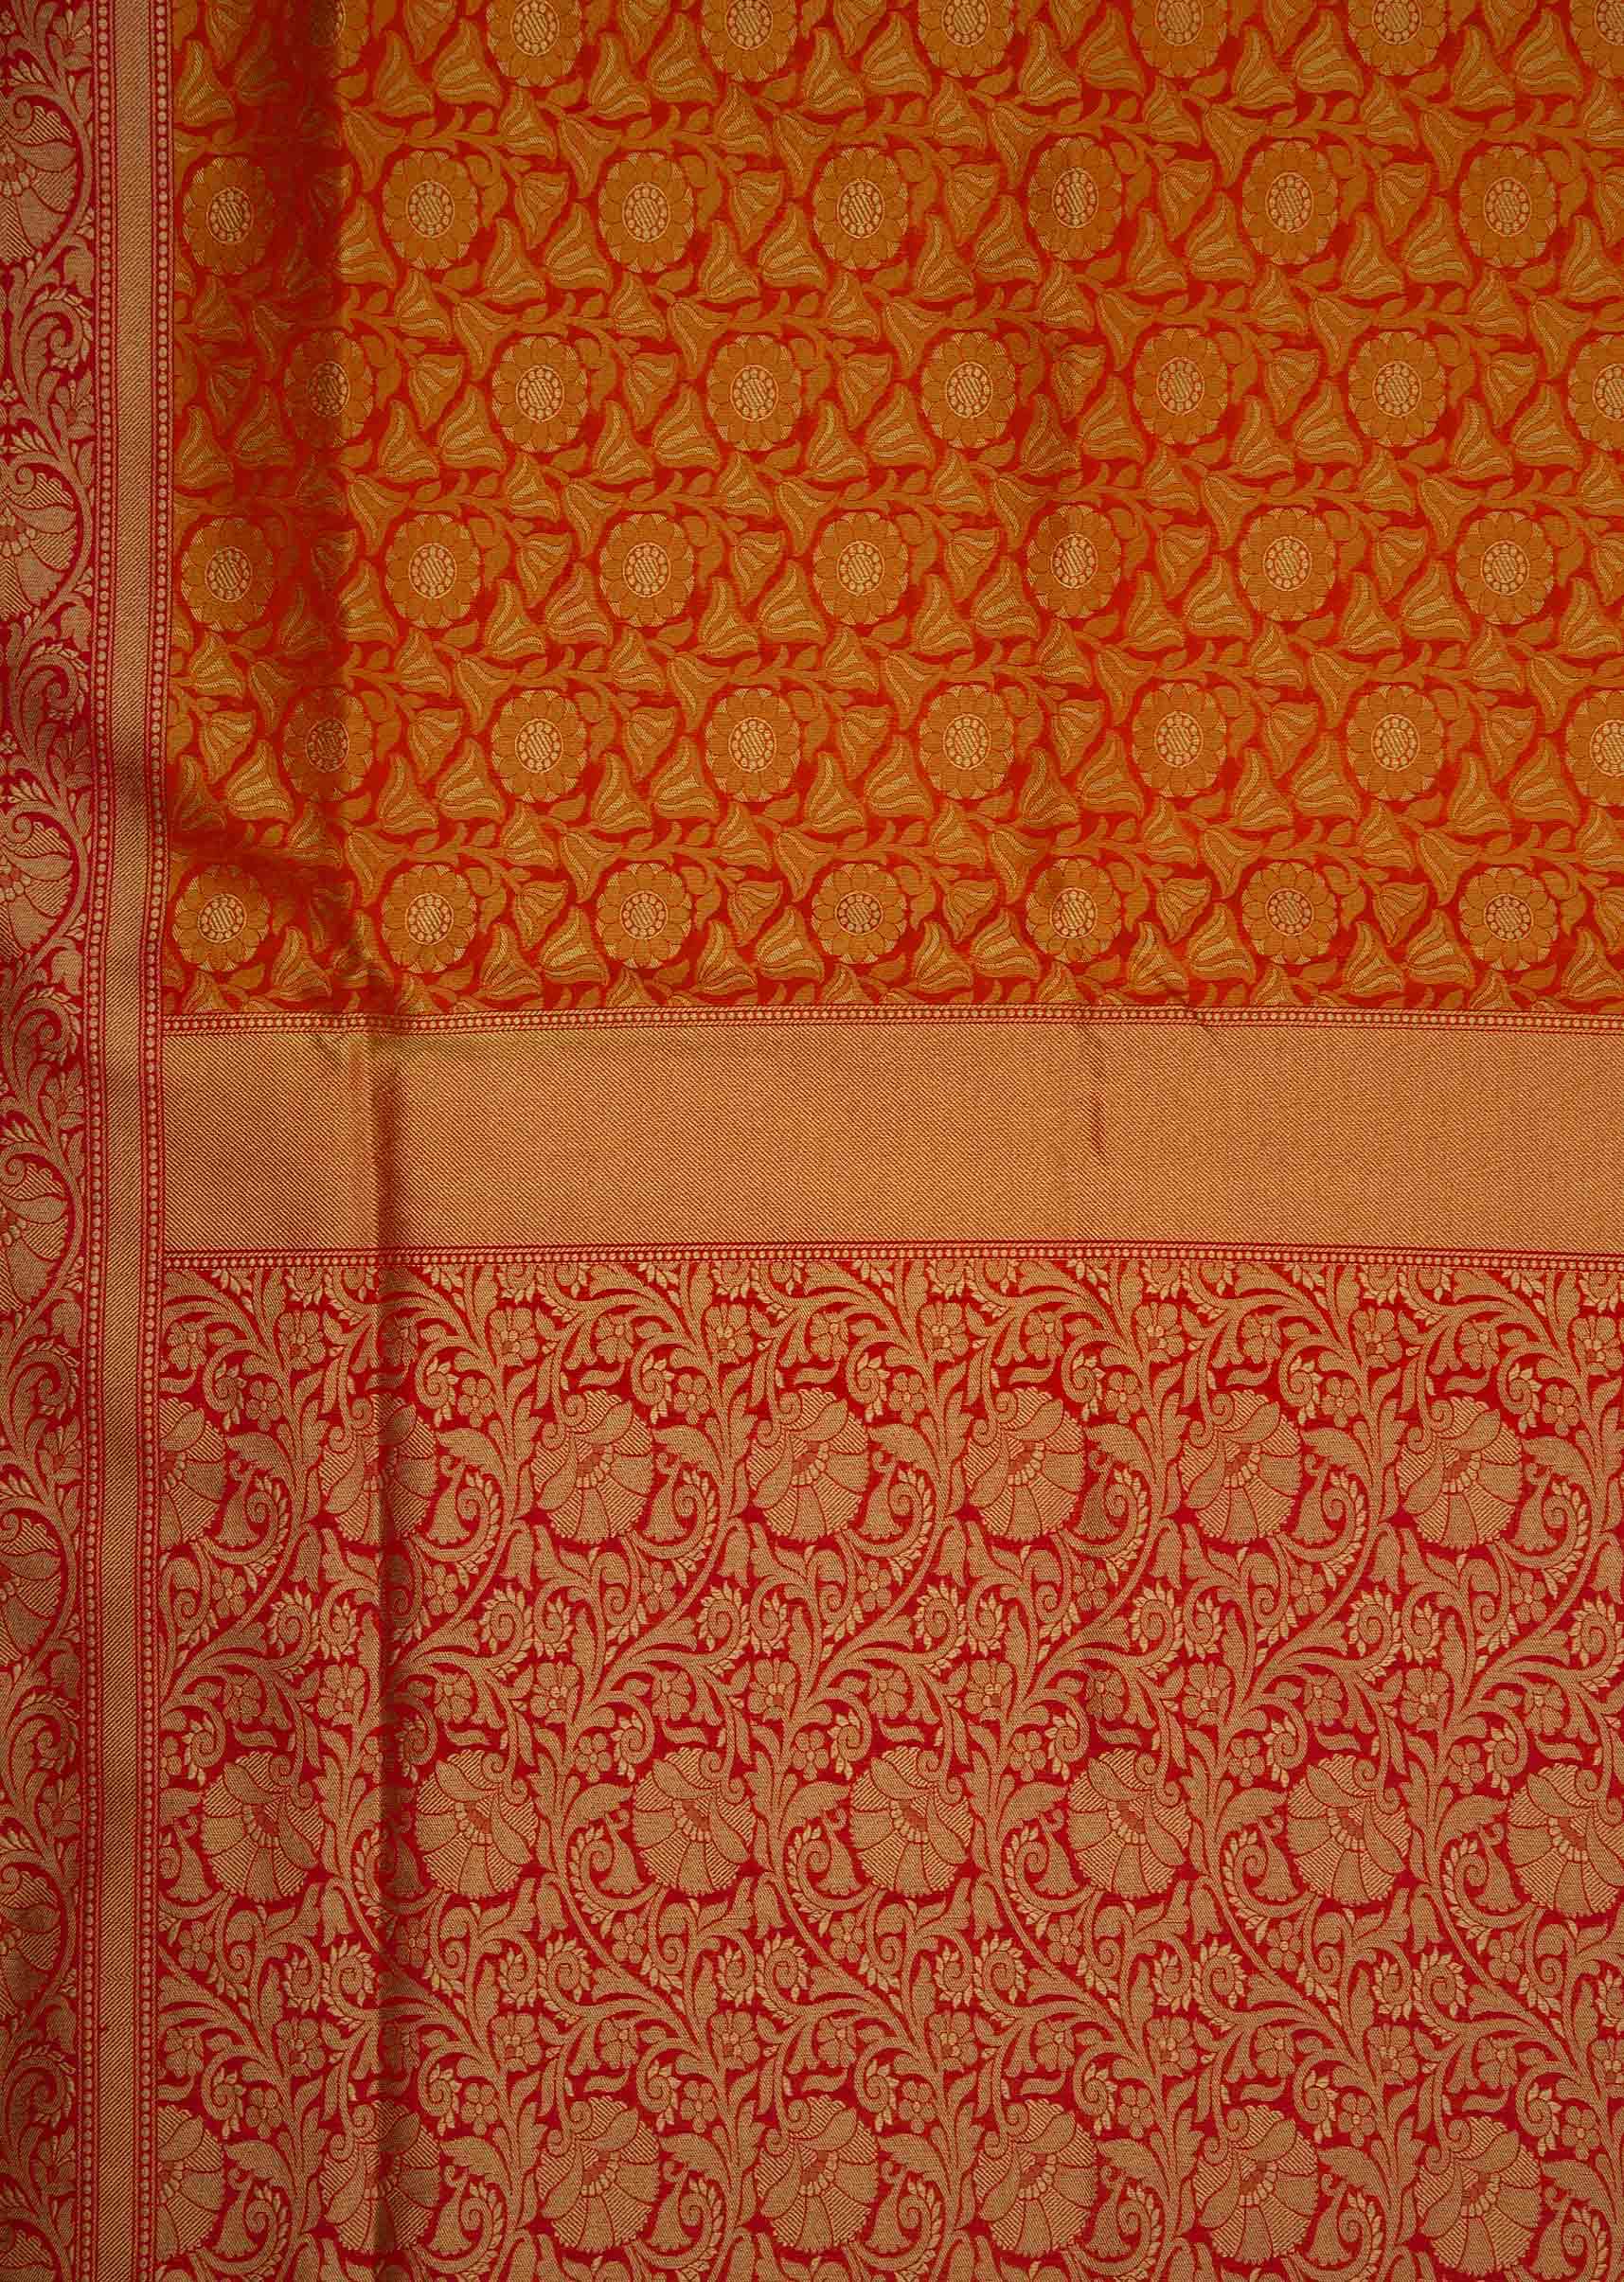 Orange brocade saree in floral motif